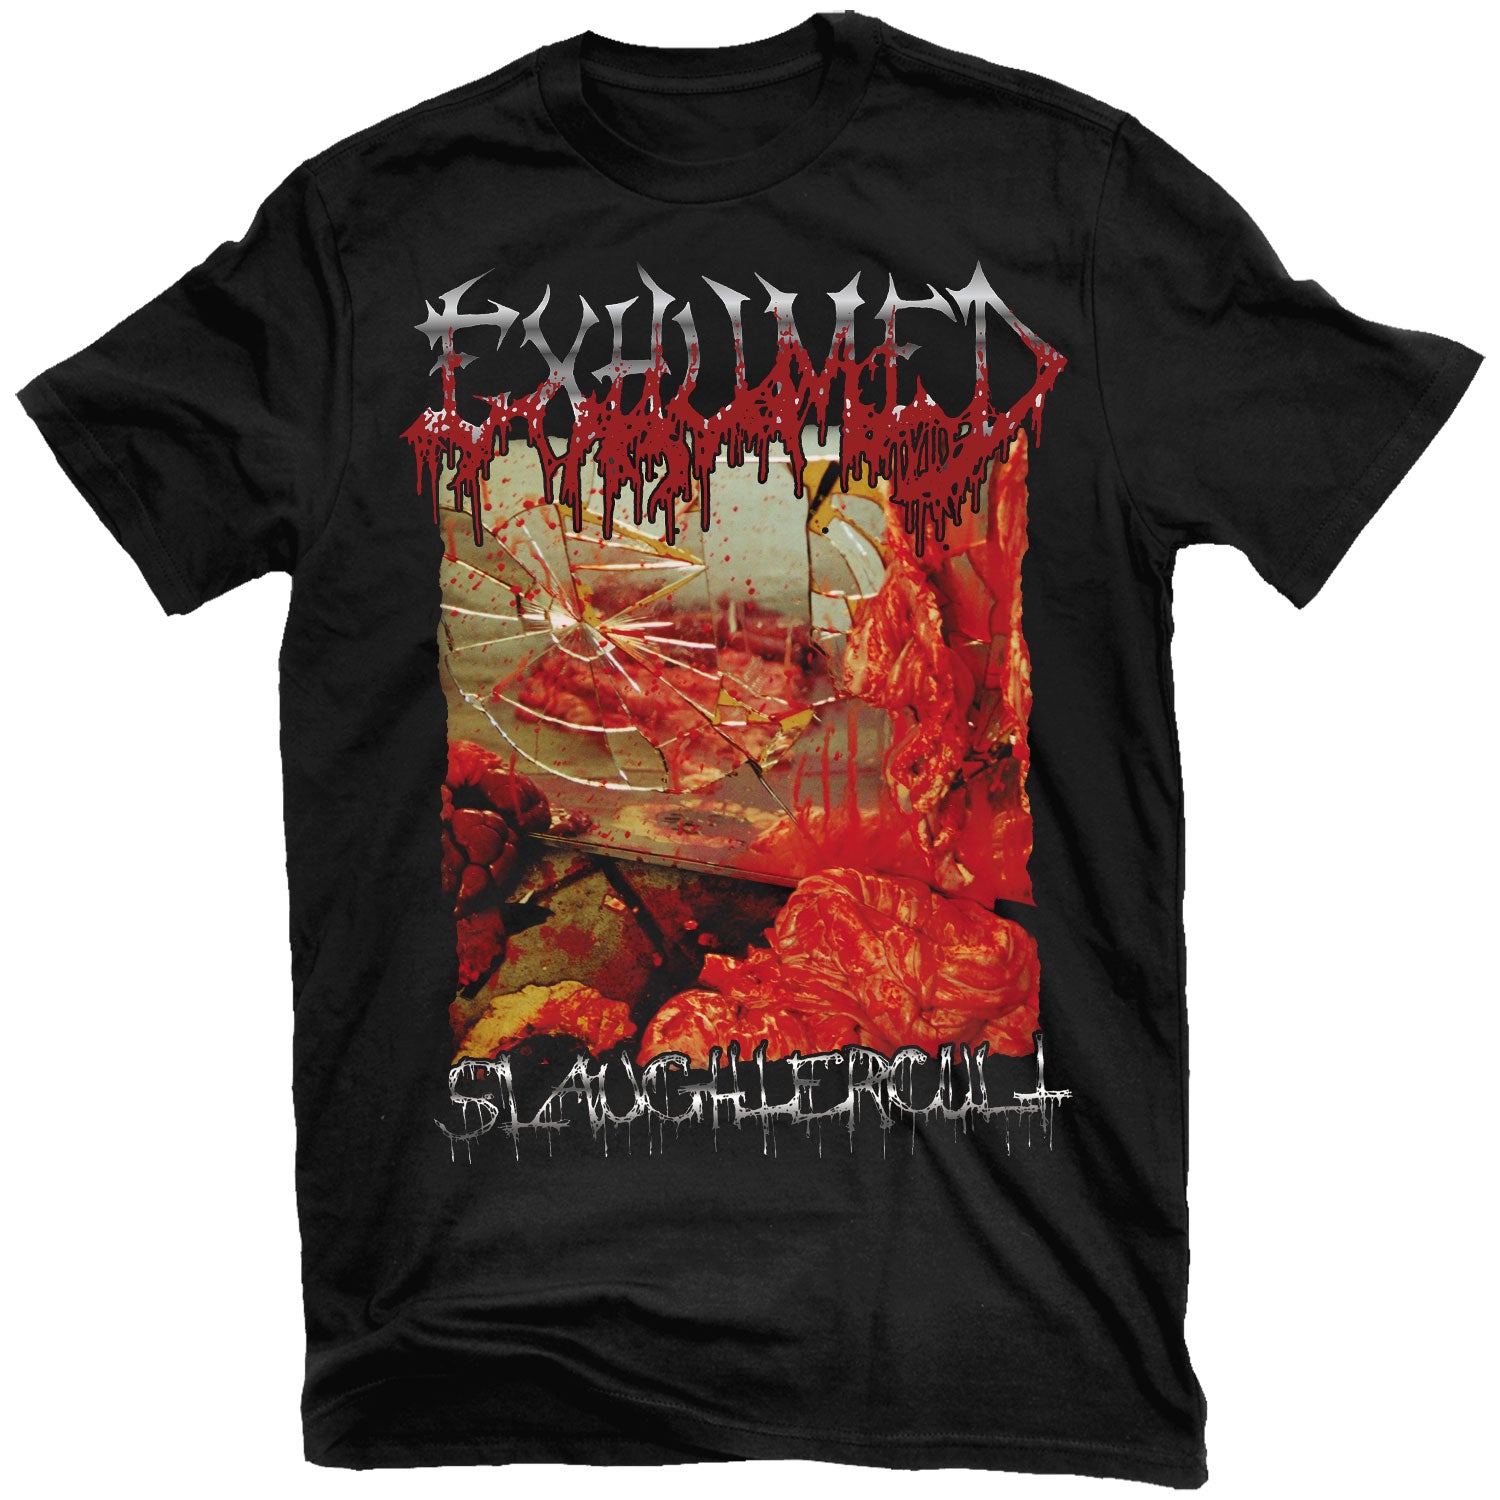 Exhumed "Slaughtercult" T-Shirt